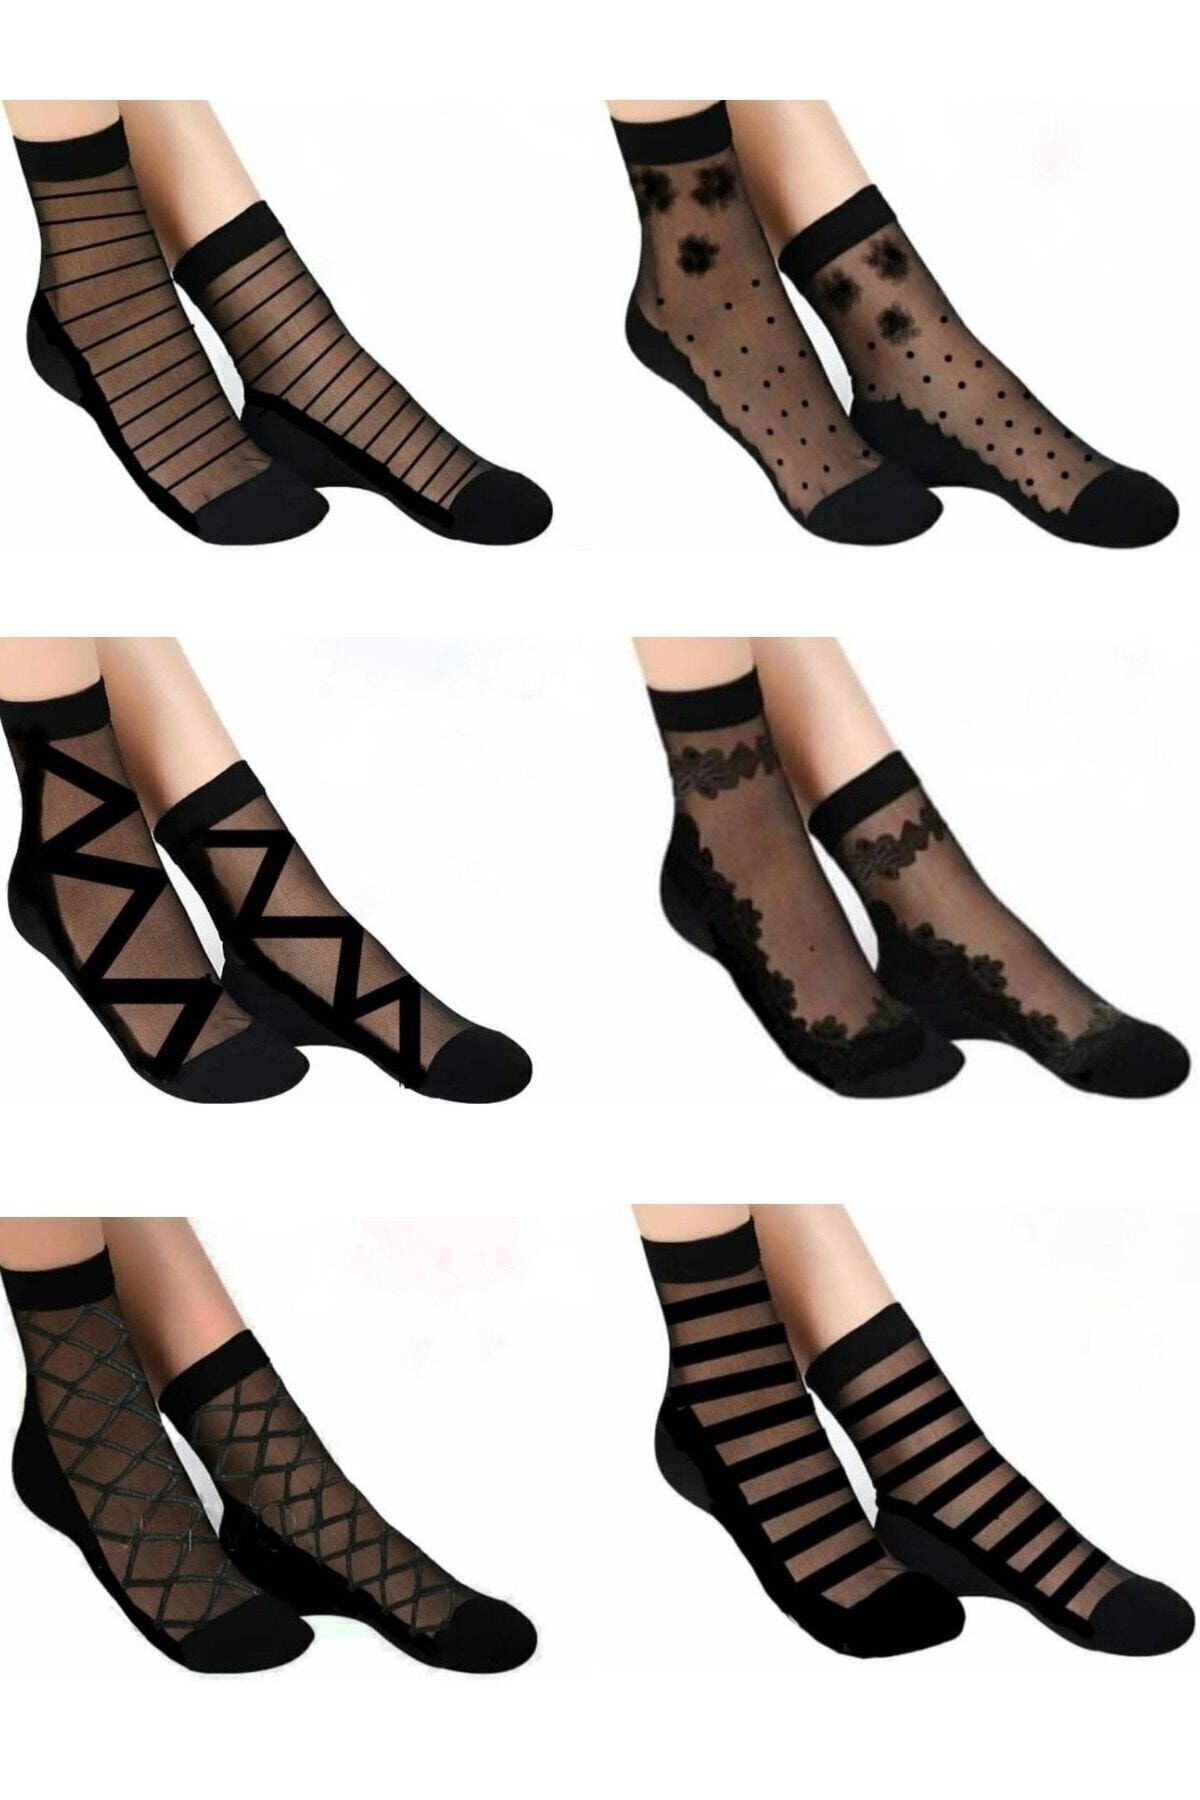 BGK Kadın Desenli Tül Çorap 6 Çift